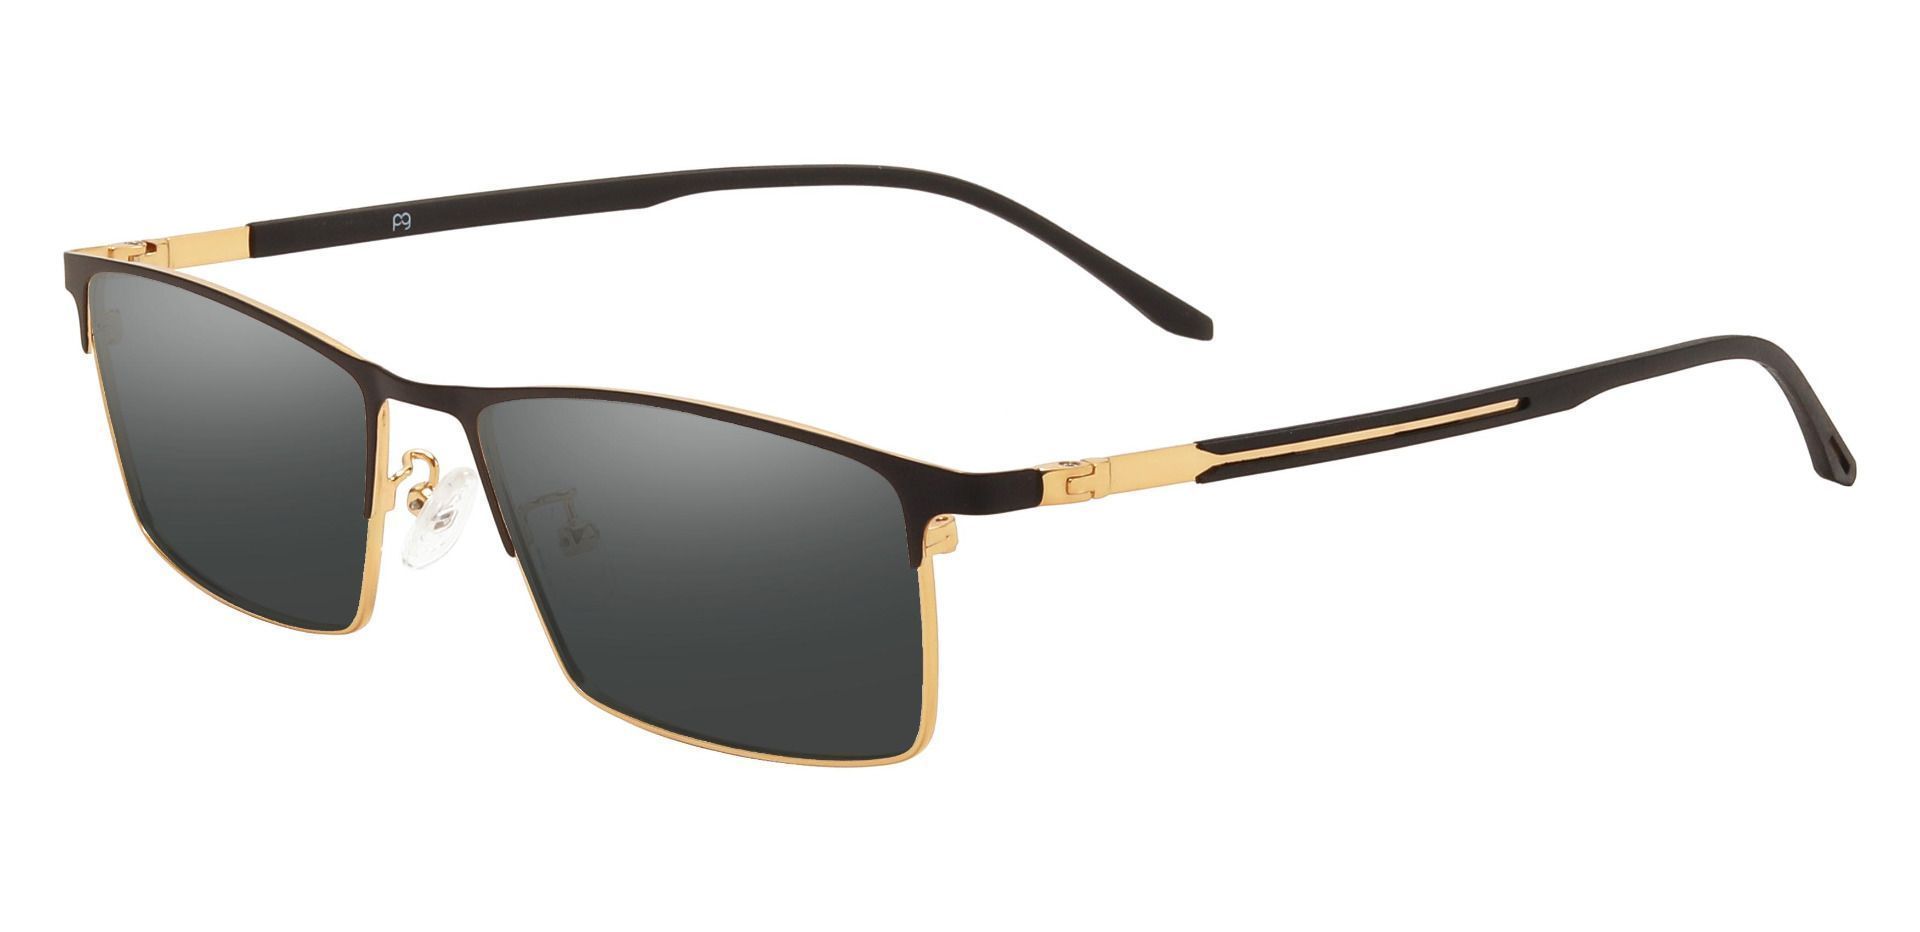 Regis Rectangle Reading Sunglasses - Black Frame With Gray Lenses